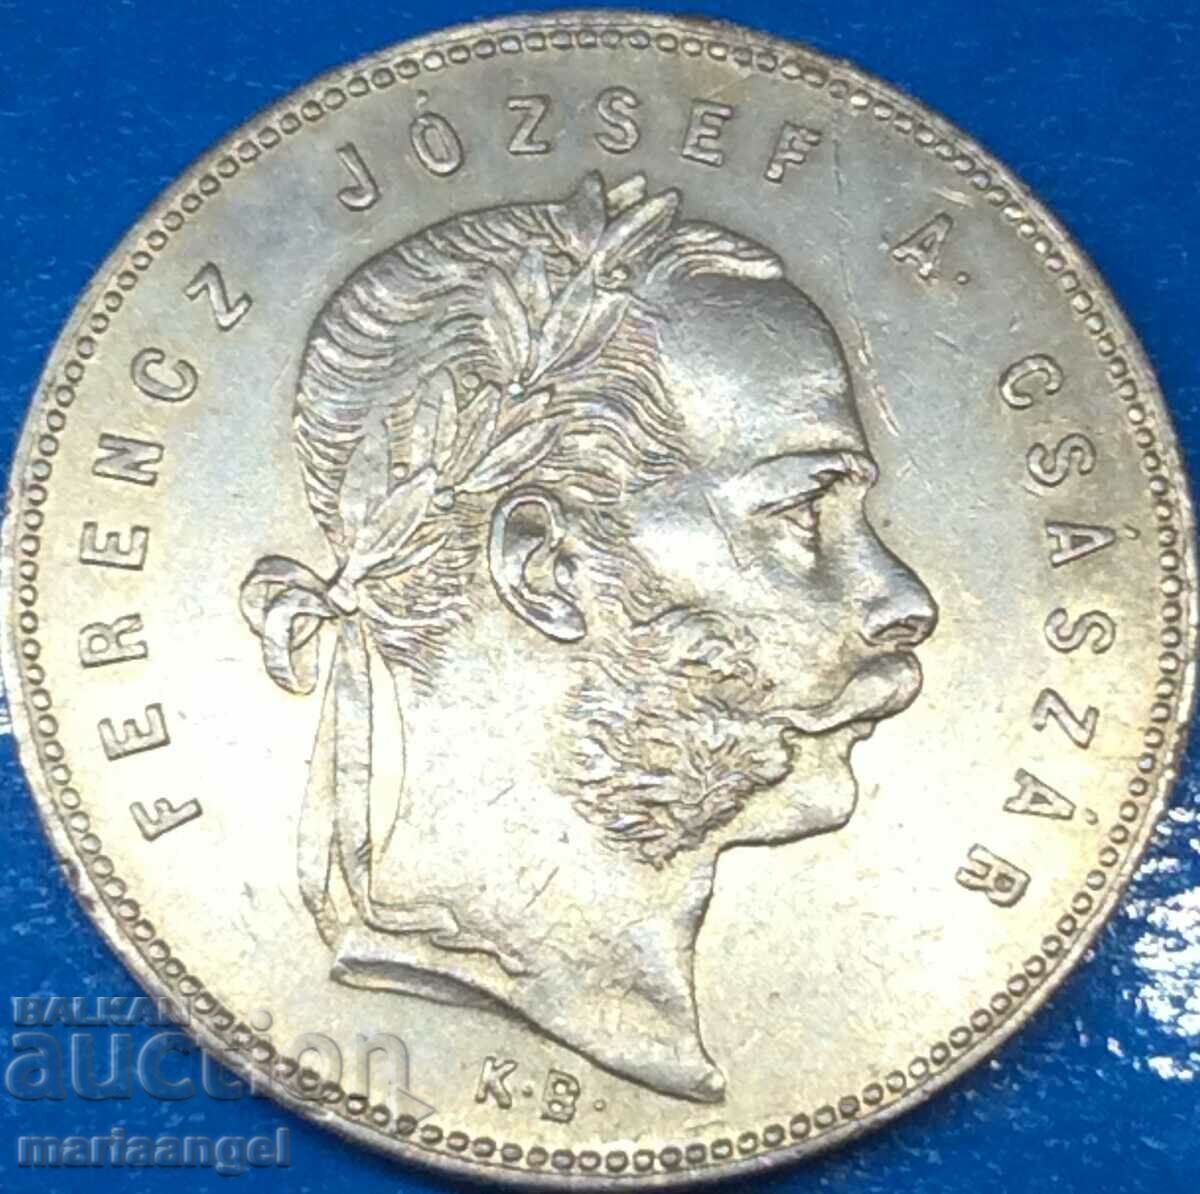 Ungaria 1 forint 1869 Franz Joseph II argint - foarte rar